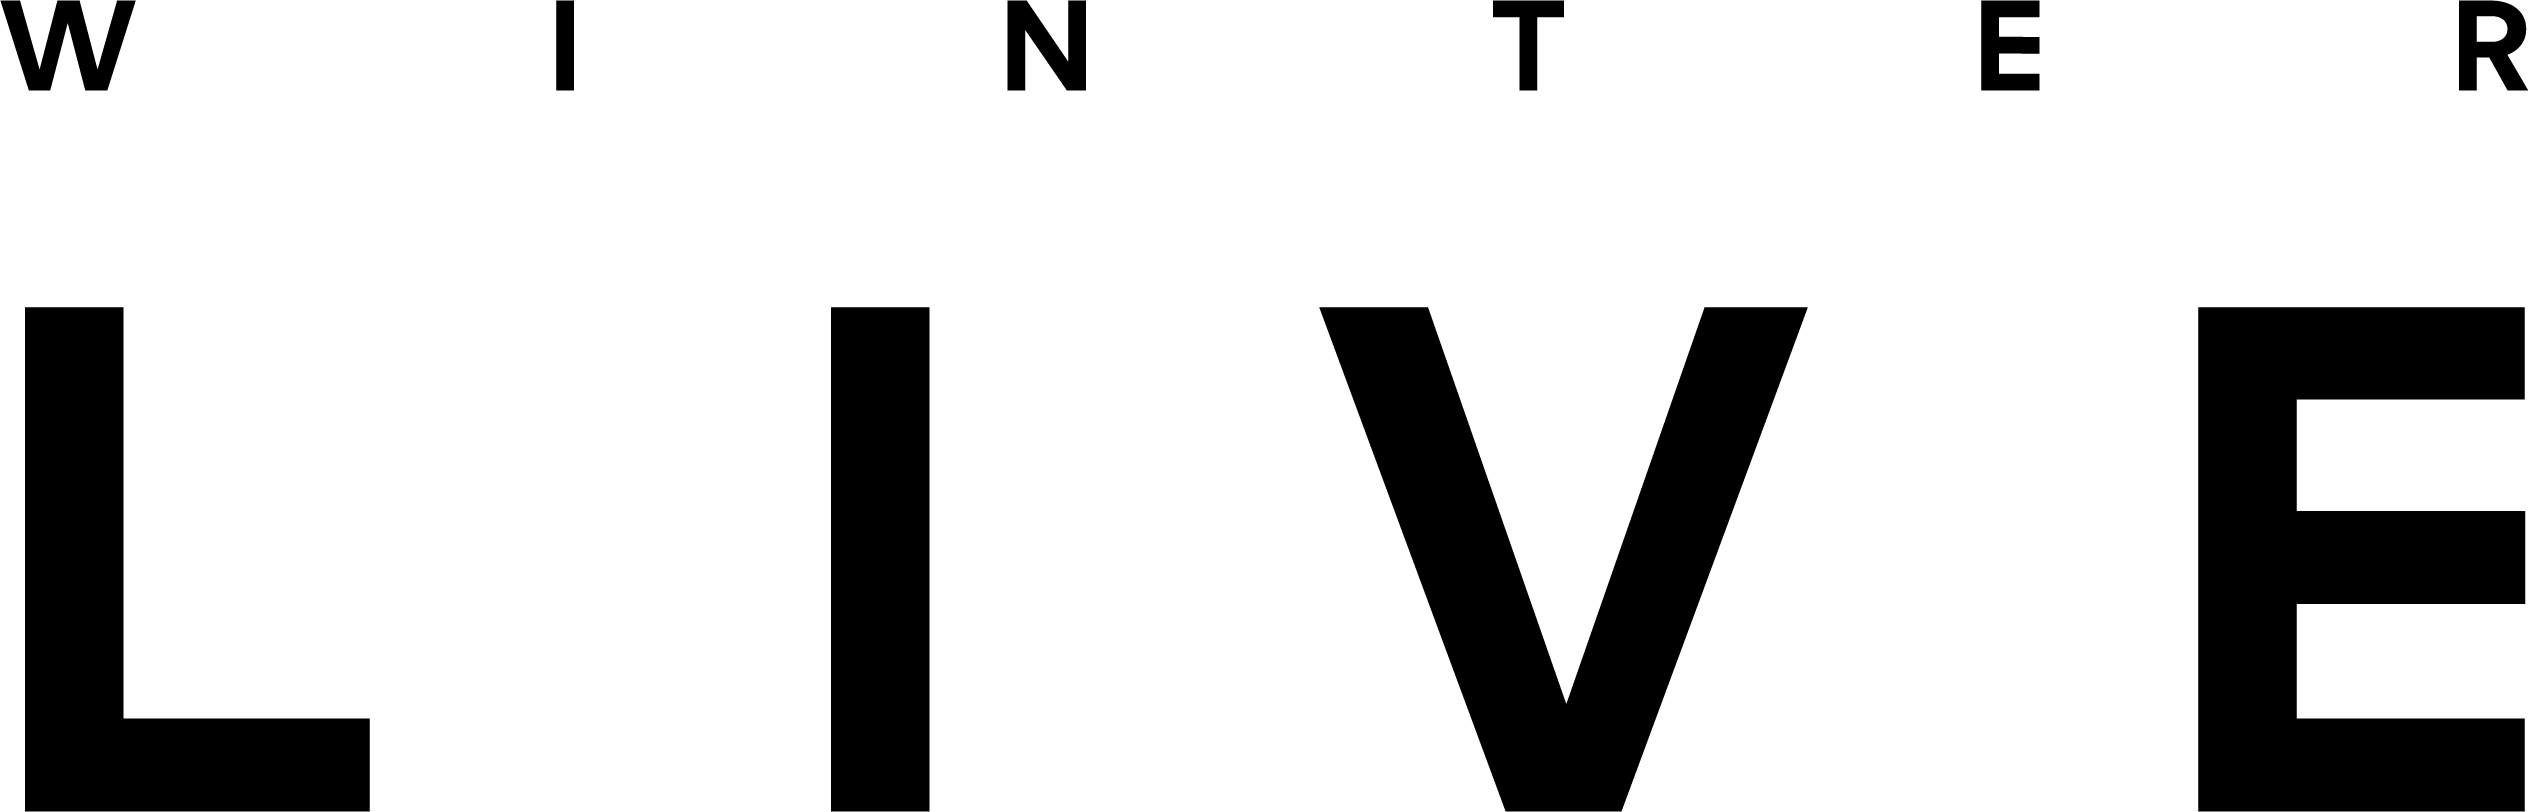 Winter live logo in black